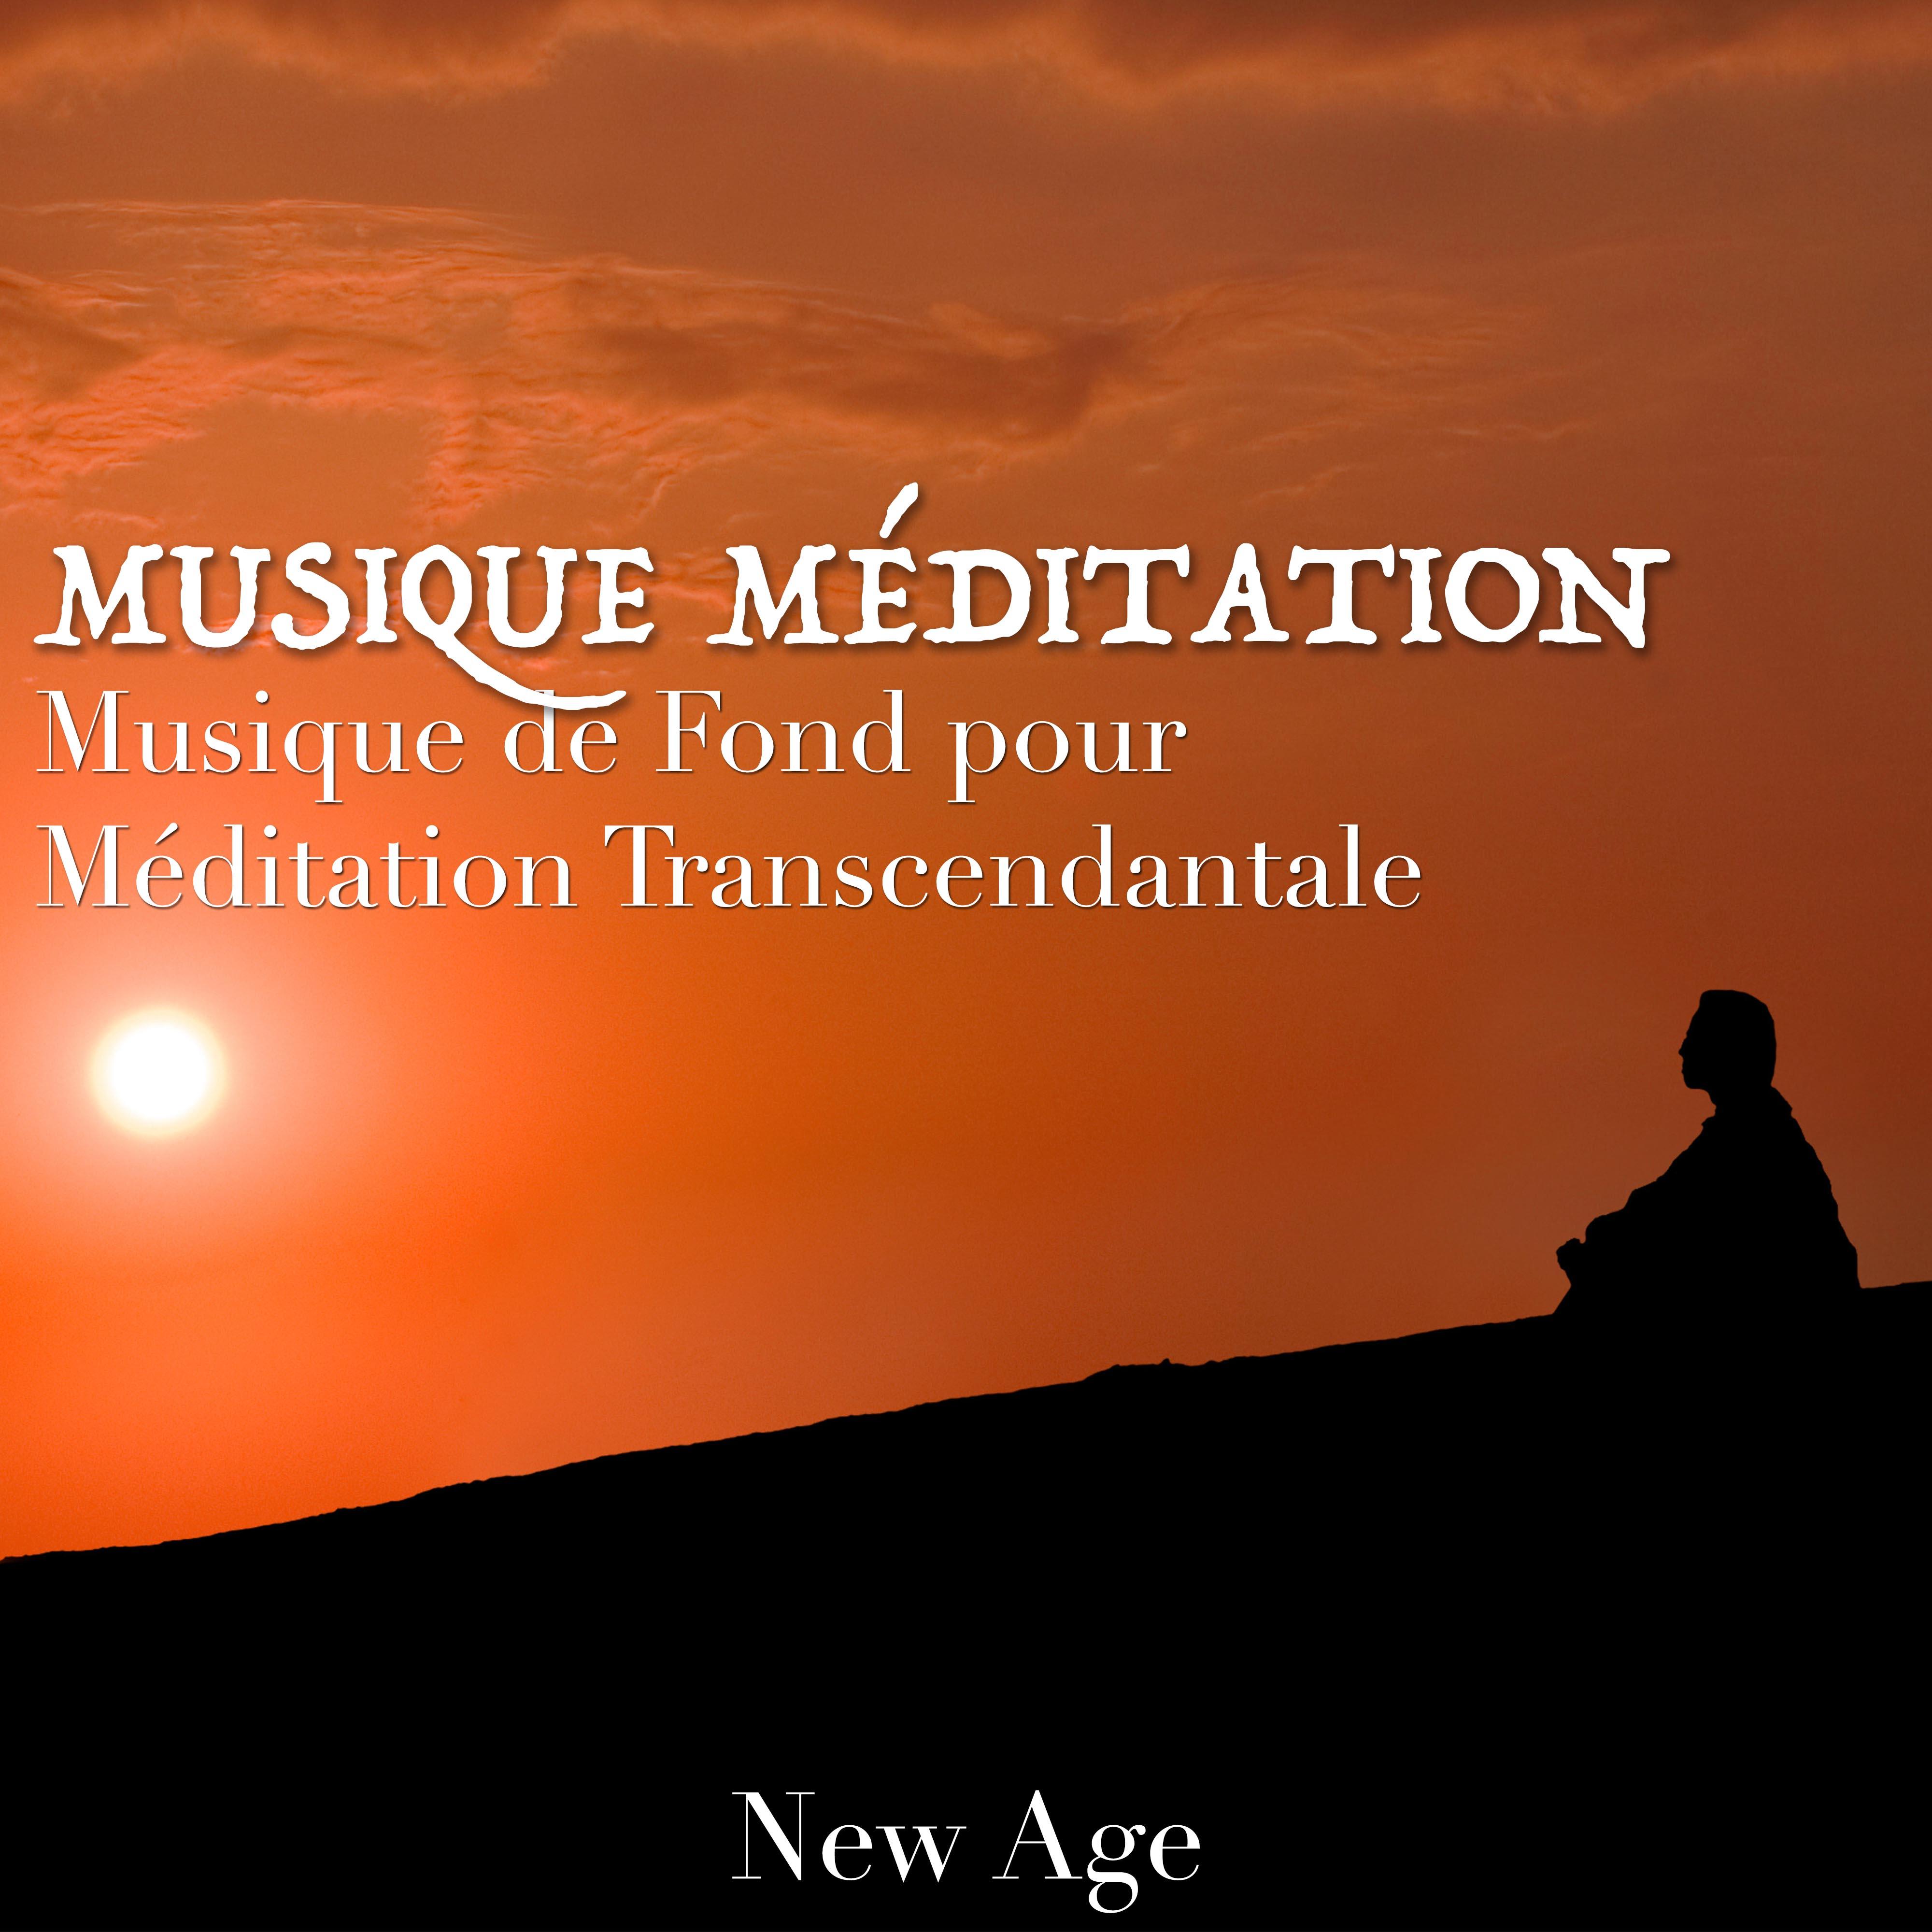 Musique Me ditation: Musique de Fond pour Me ditation Transcendantale et Relaxation